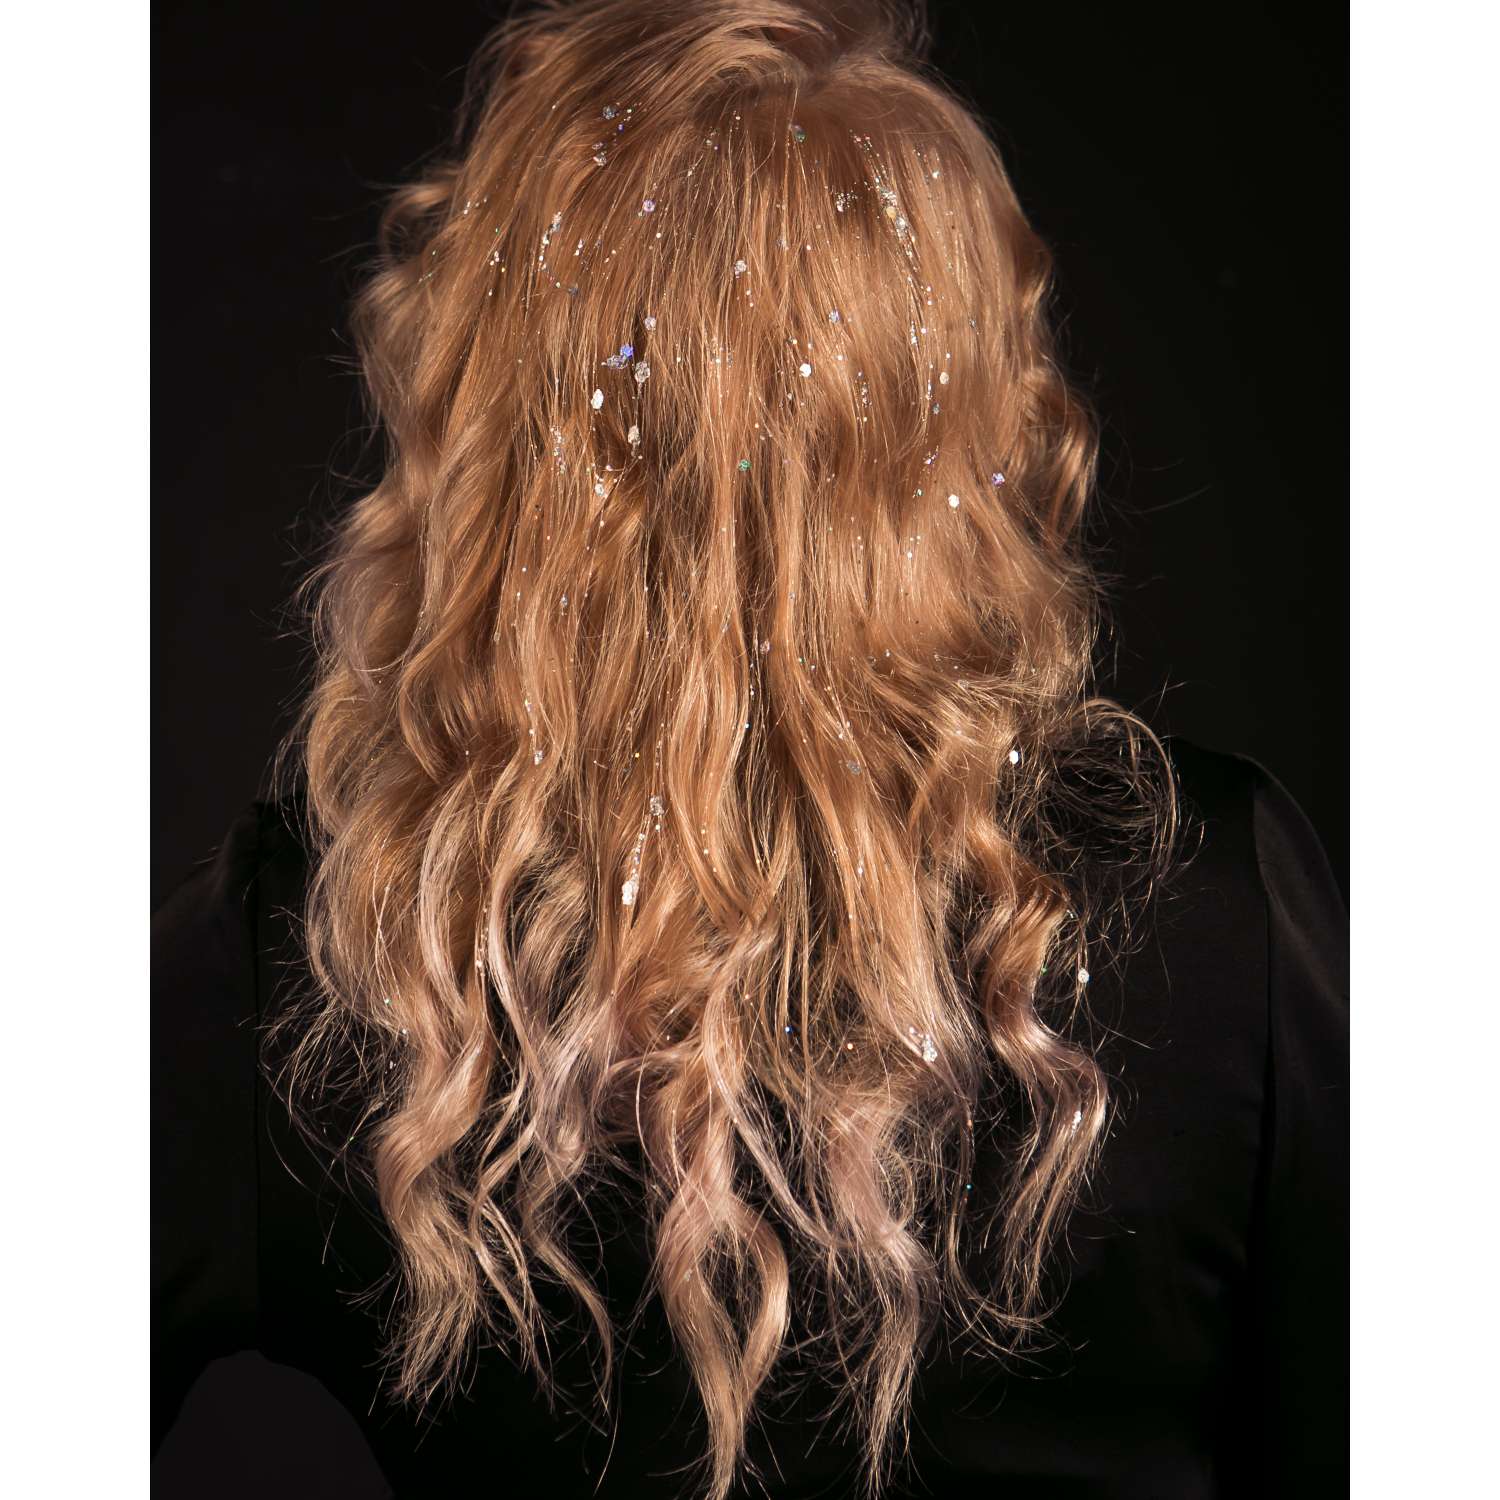 Гель с блестками Kildimia для волос тела и лица Снежная королева 50мл - фото 9